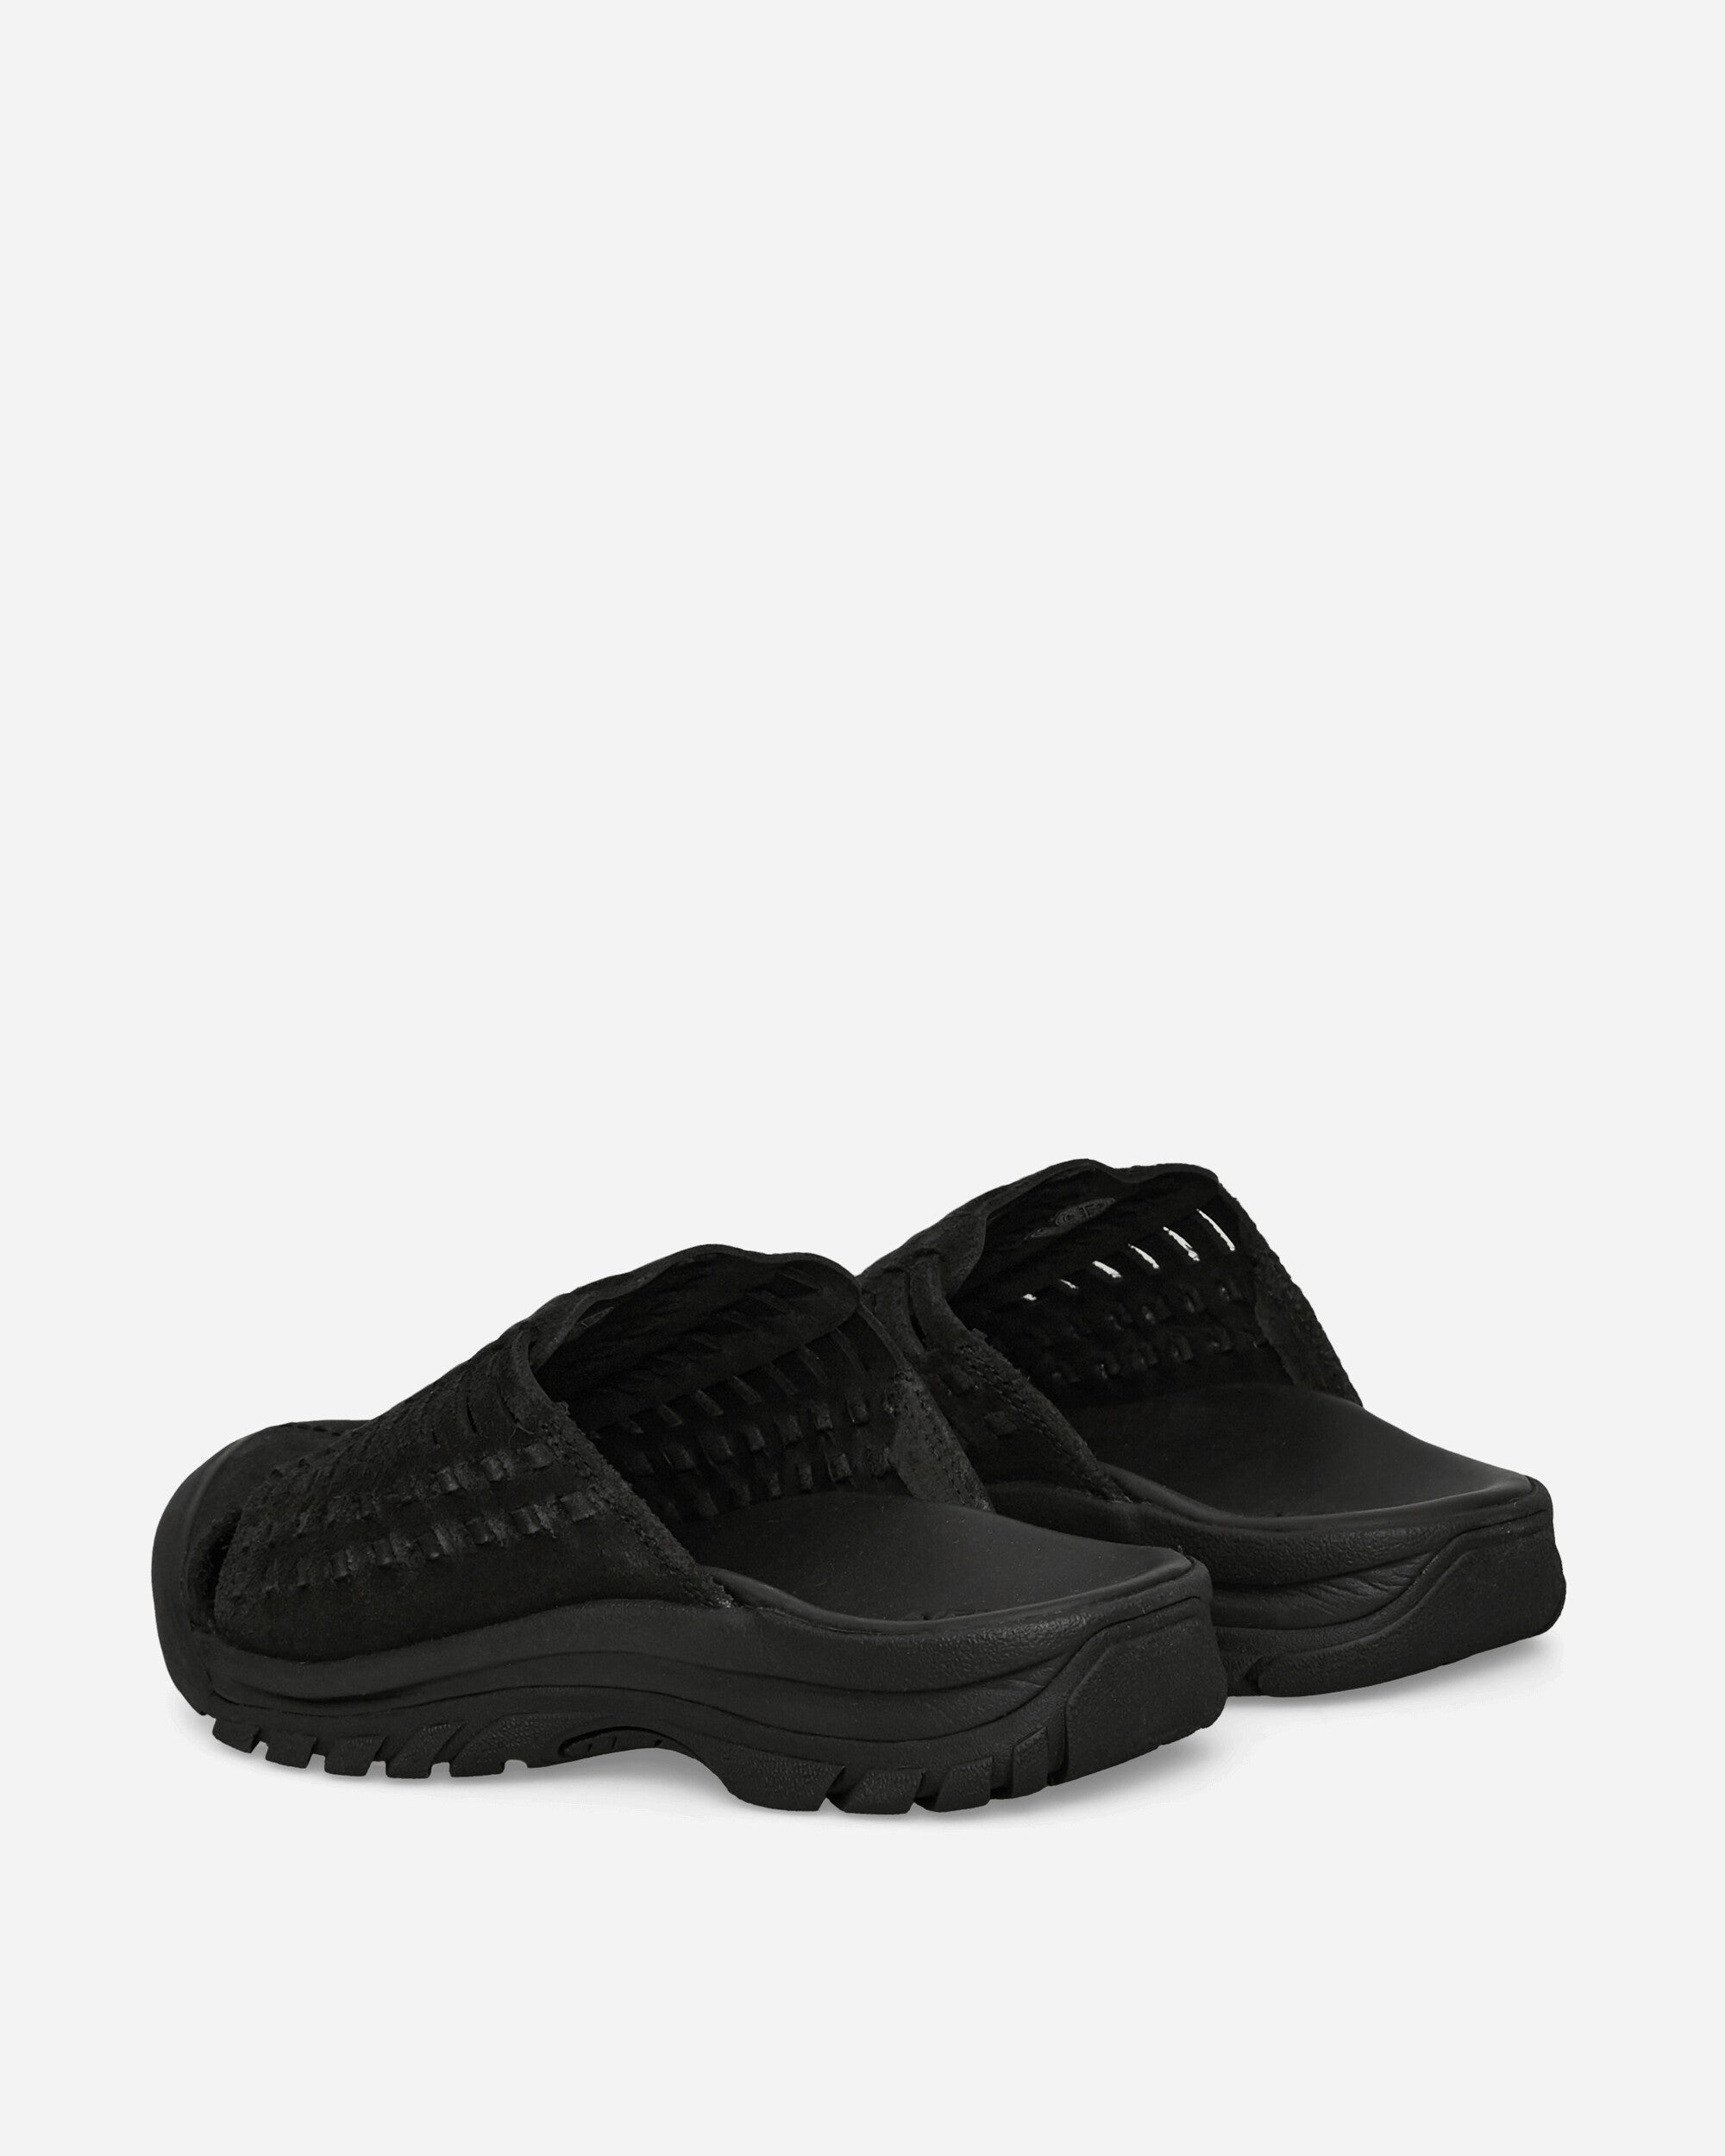 Keen San Juan Sandal Ii Black/Black Sandals and Slides Sandals and Mules 1028591 001